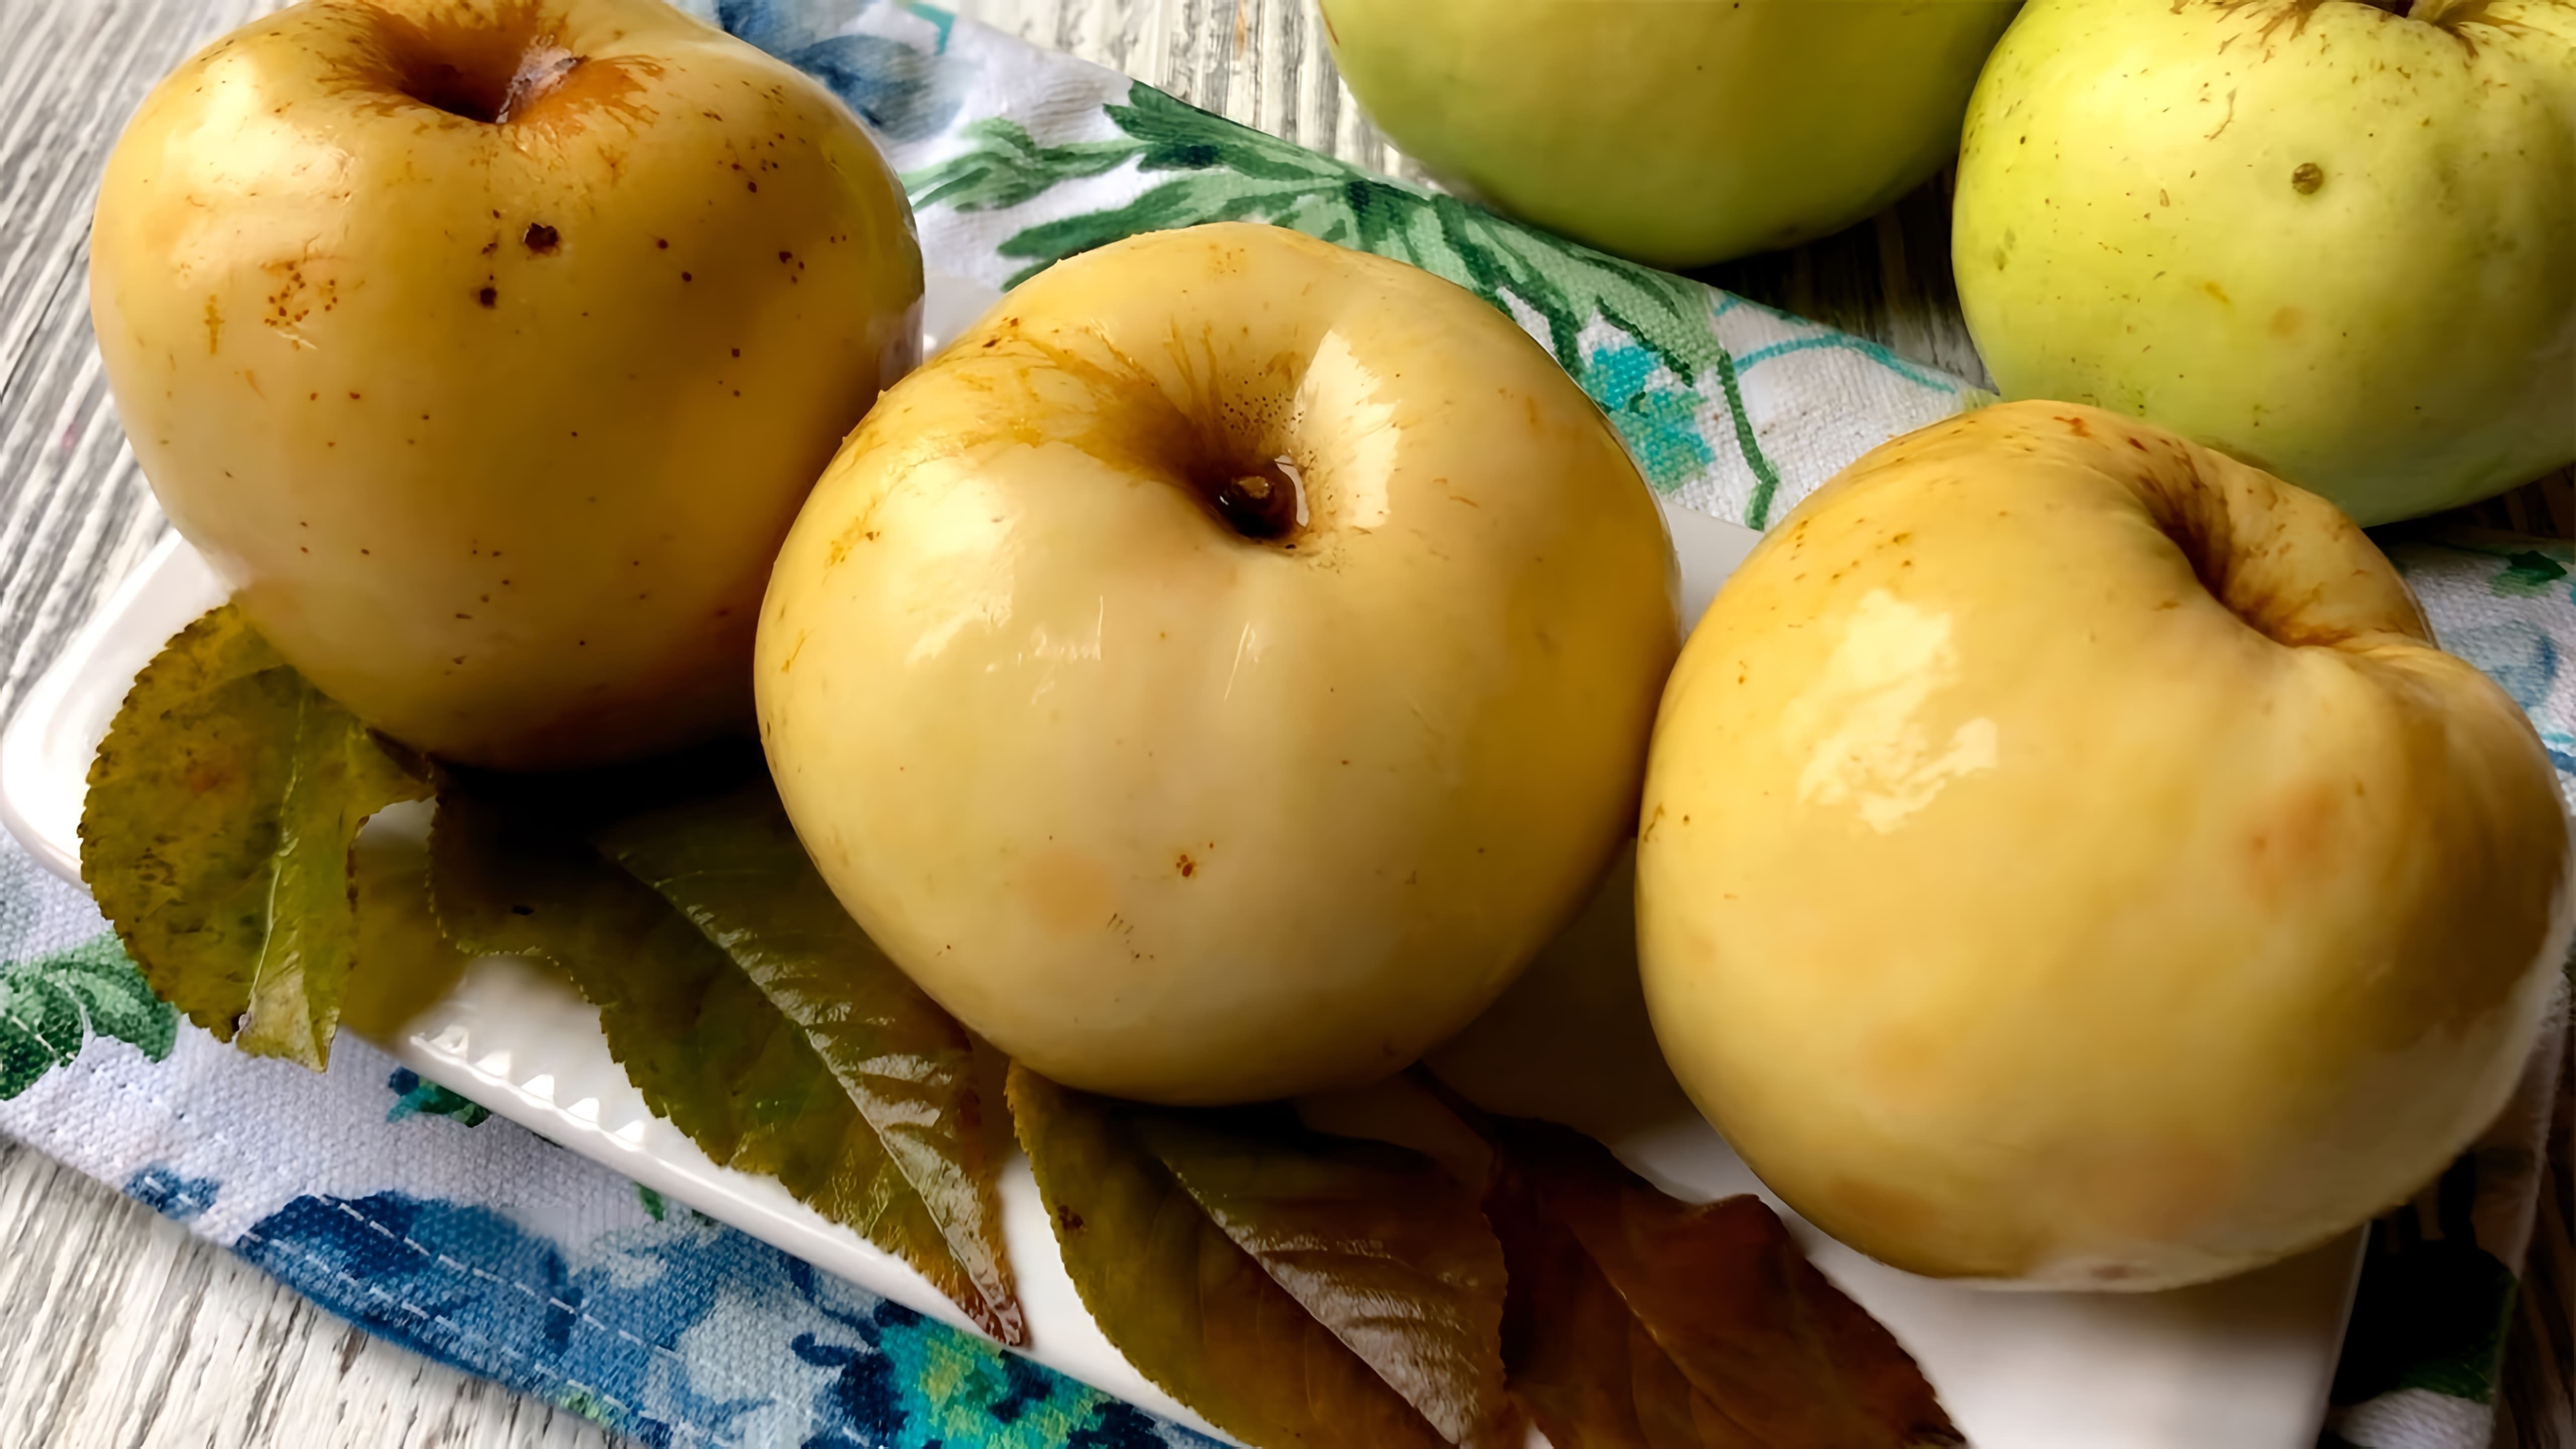 Моченые яблоки (антоновка) - это вкусный и полезный способ сохранить яблоки на зиму